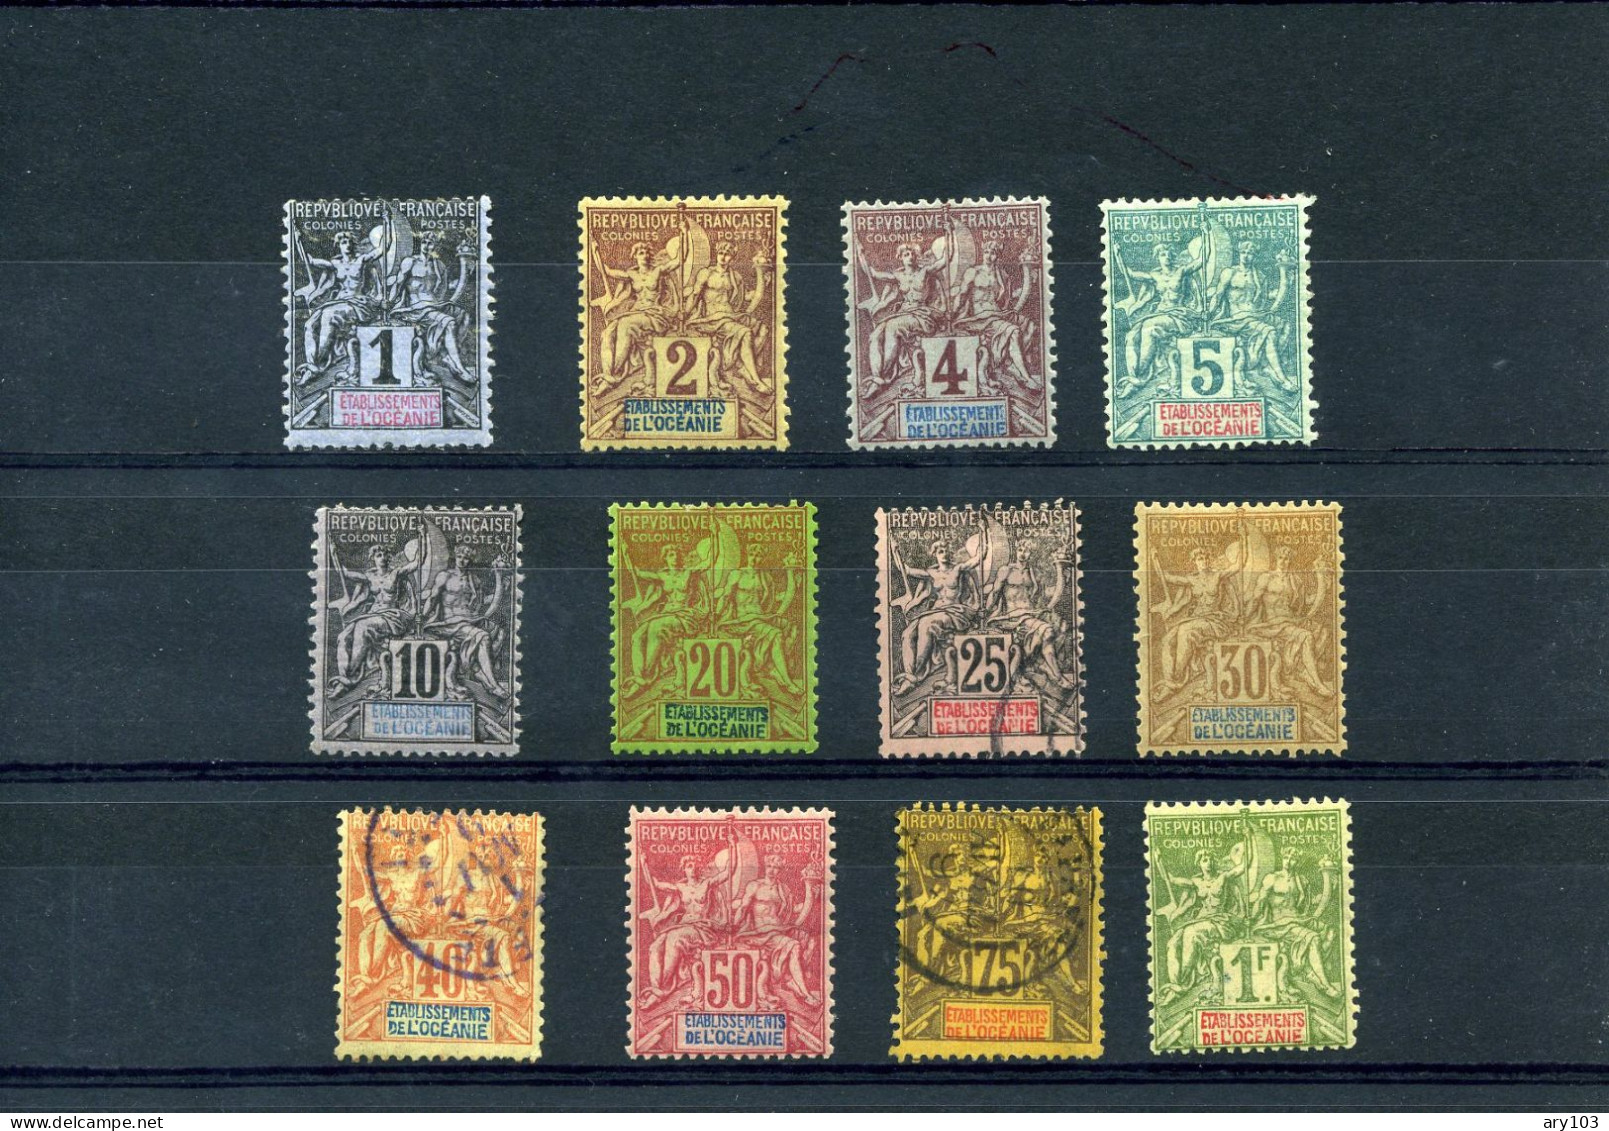 Océanie -  Etablissement  De -  (1892 )  Série N°1/13 - Used Stamps